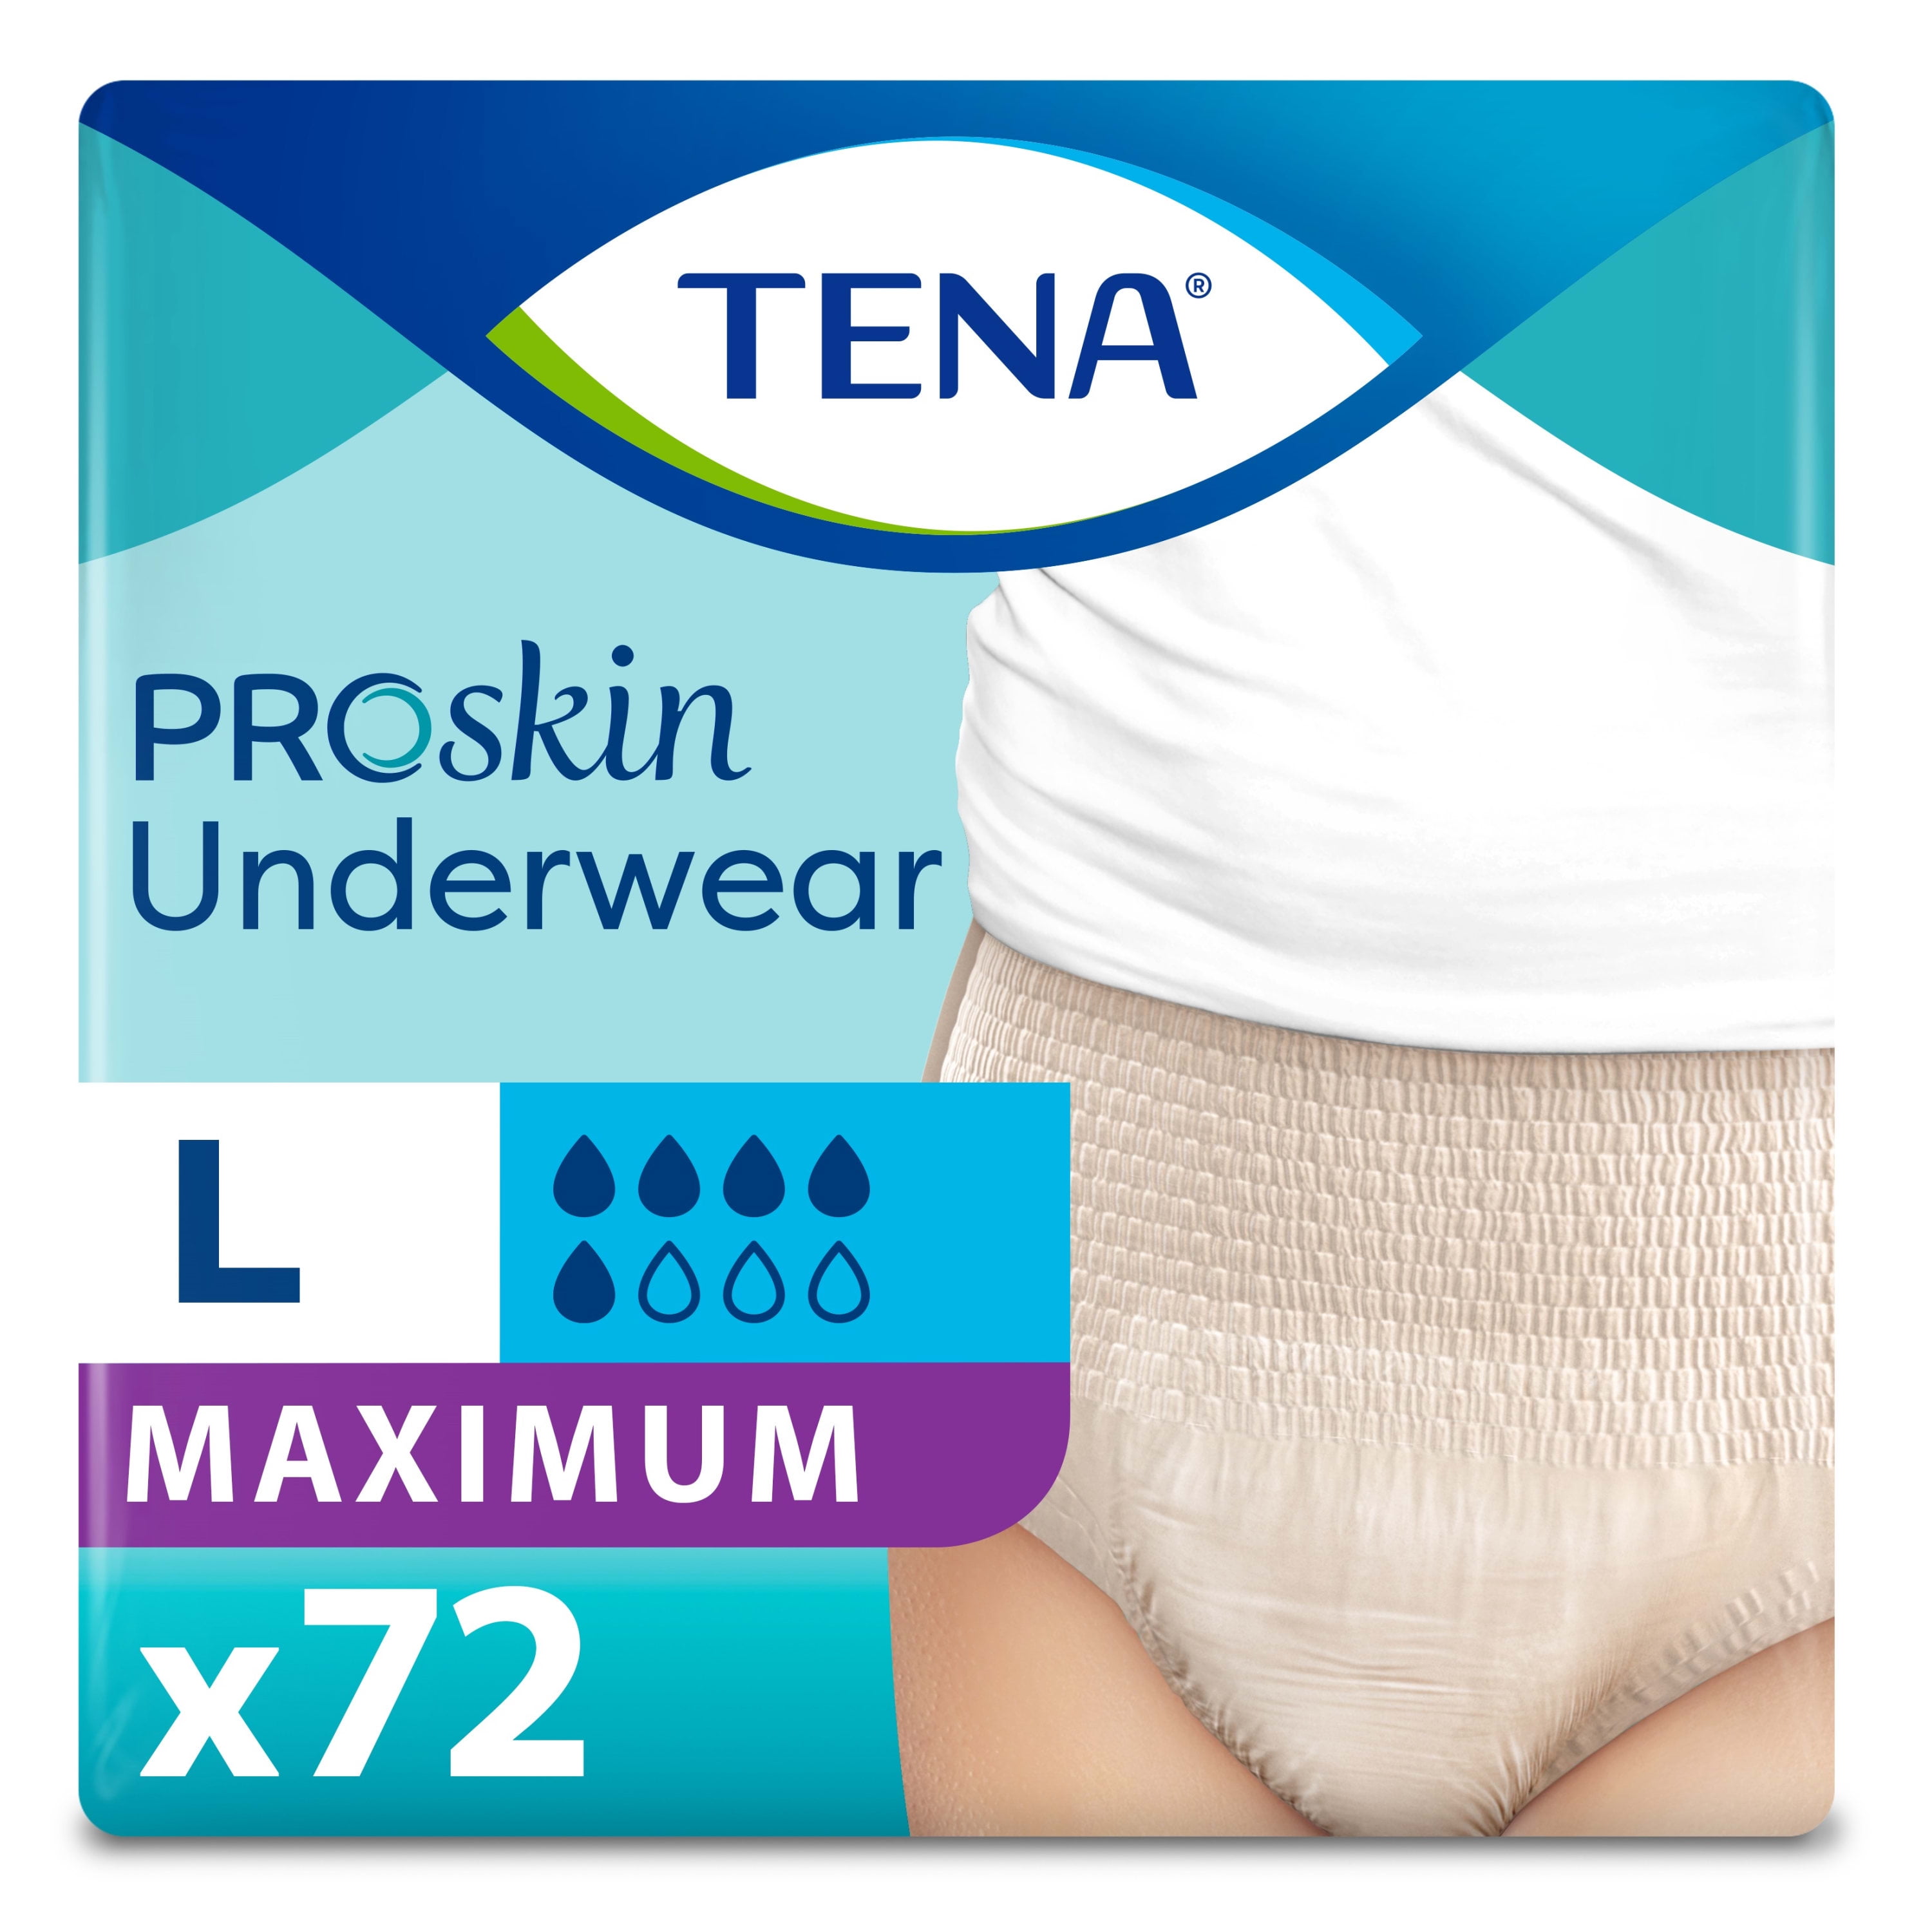 Tena ProSkin Incontinence Underwear for Women, Maximum Absorbency